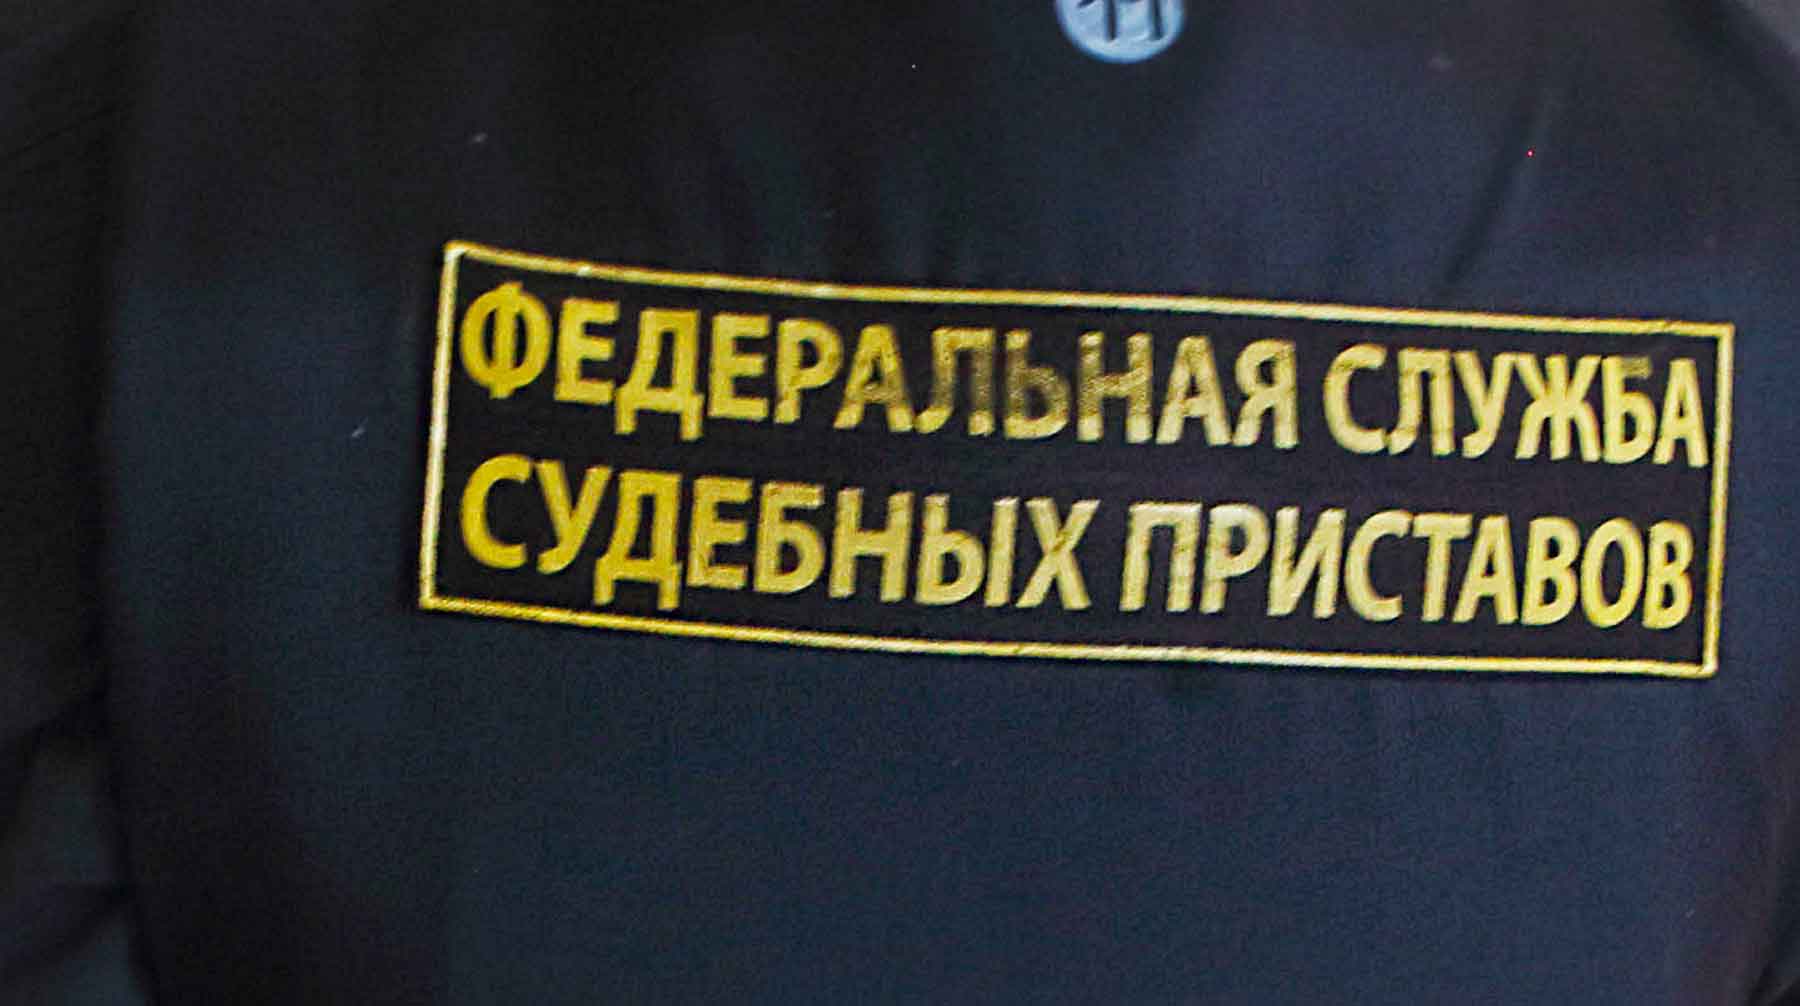 Это должно защитить граждан от злоупотреблений коллекторов, считают в ведомстве Фото: © GLOBAL LOOK press / Zamir Usmanov